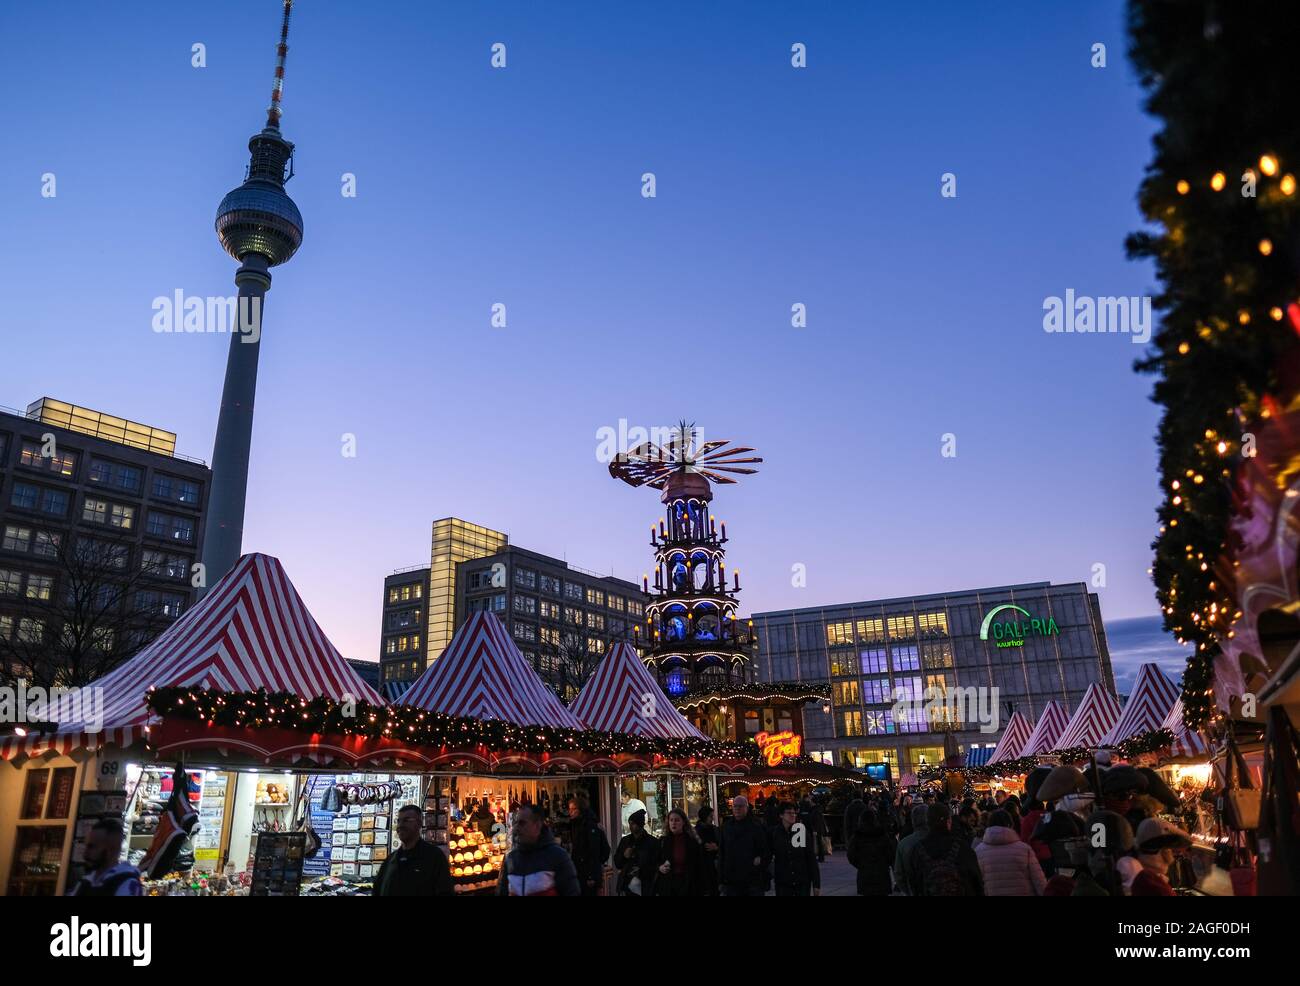 Galeria Kaufhof am Alexanderplatz in der Weihnachtsbeleuchtung  Stockfotografie - Alamy